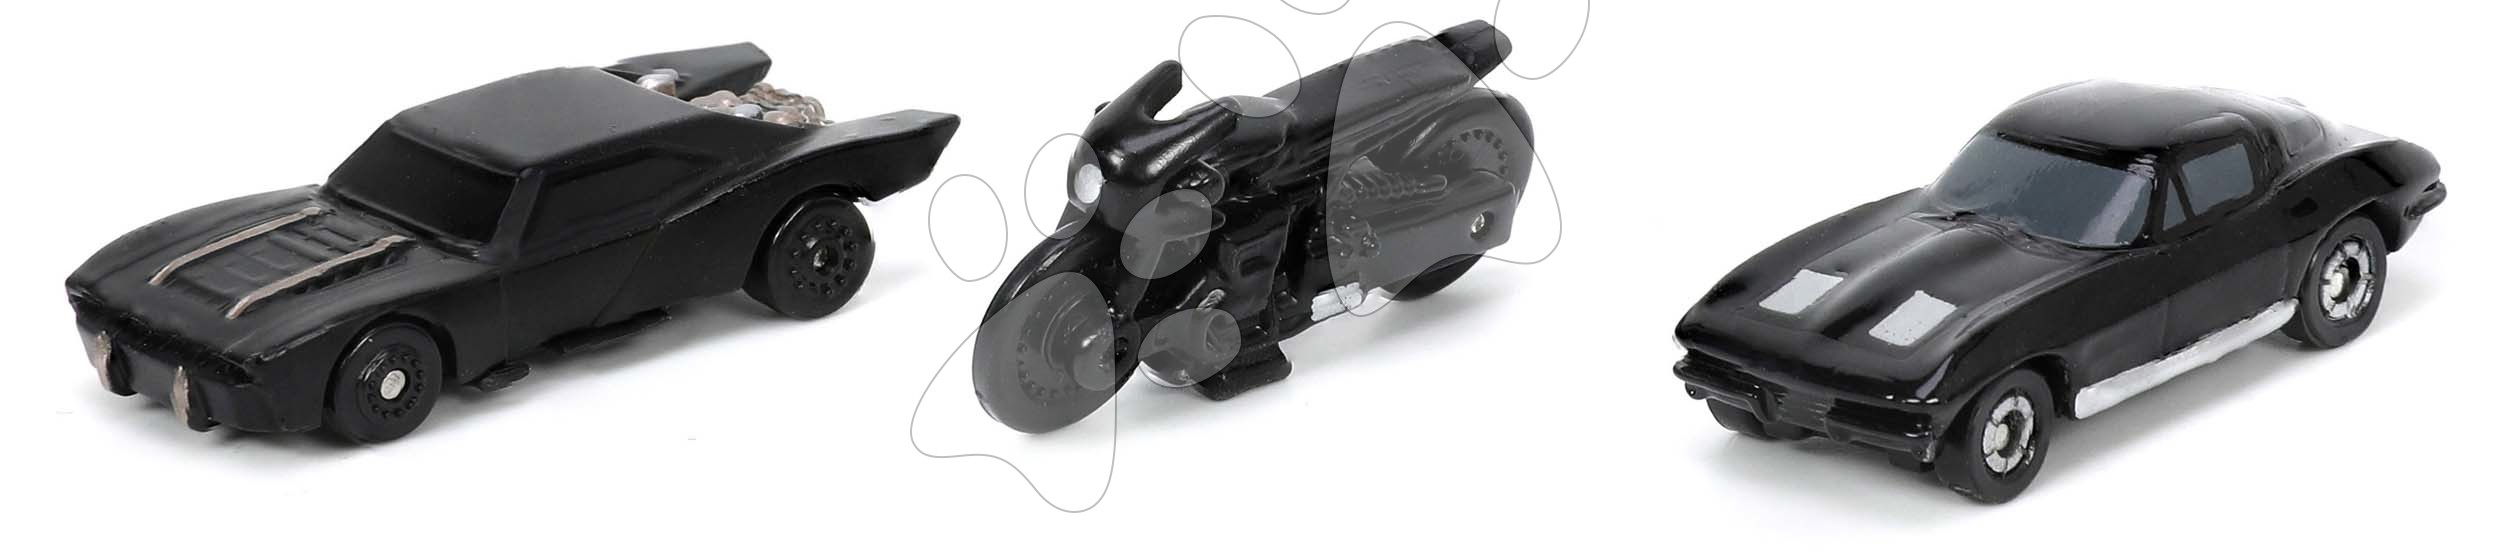 Autíčka Batman Nano 3-Pack Jada kovová délka 4 cm sada 3 druhů